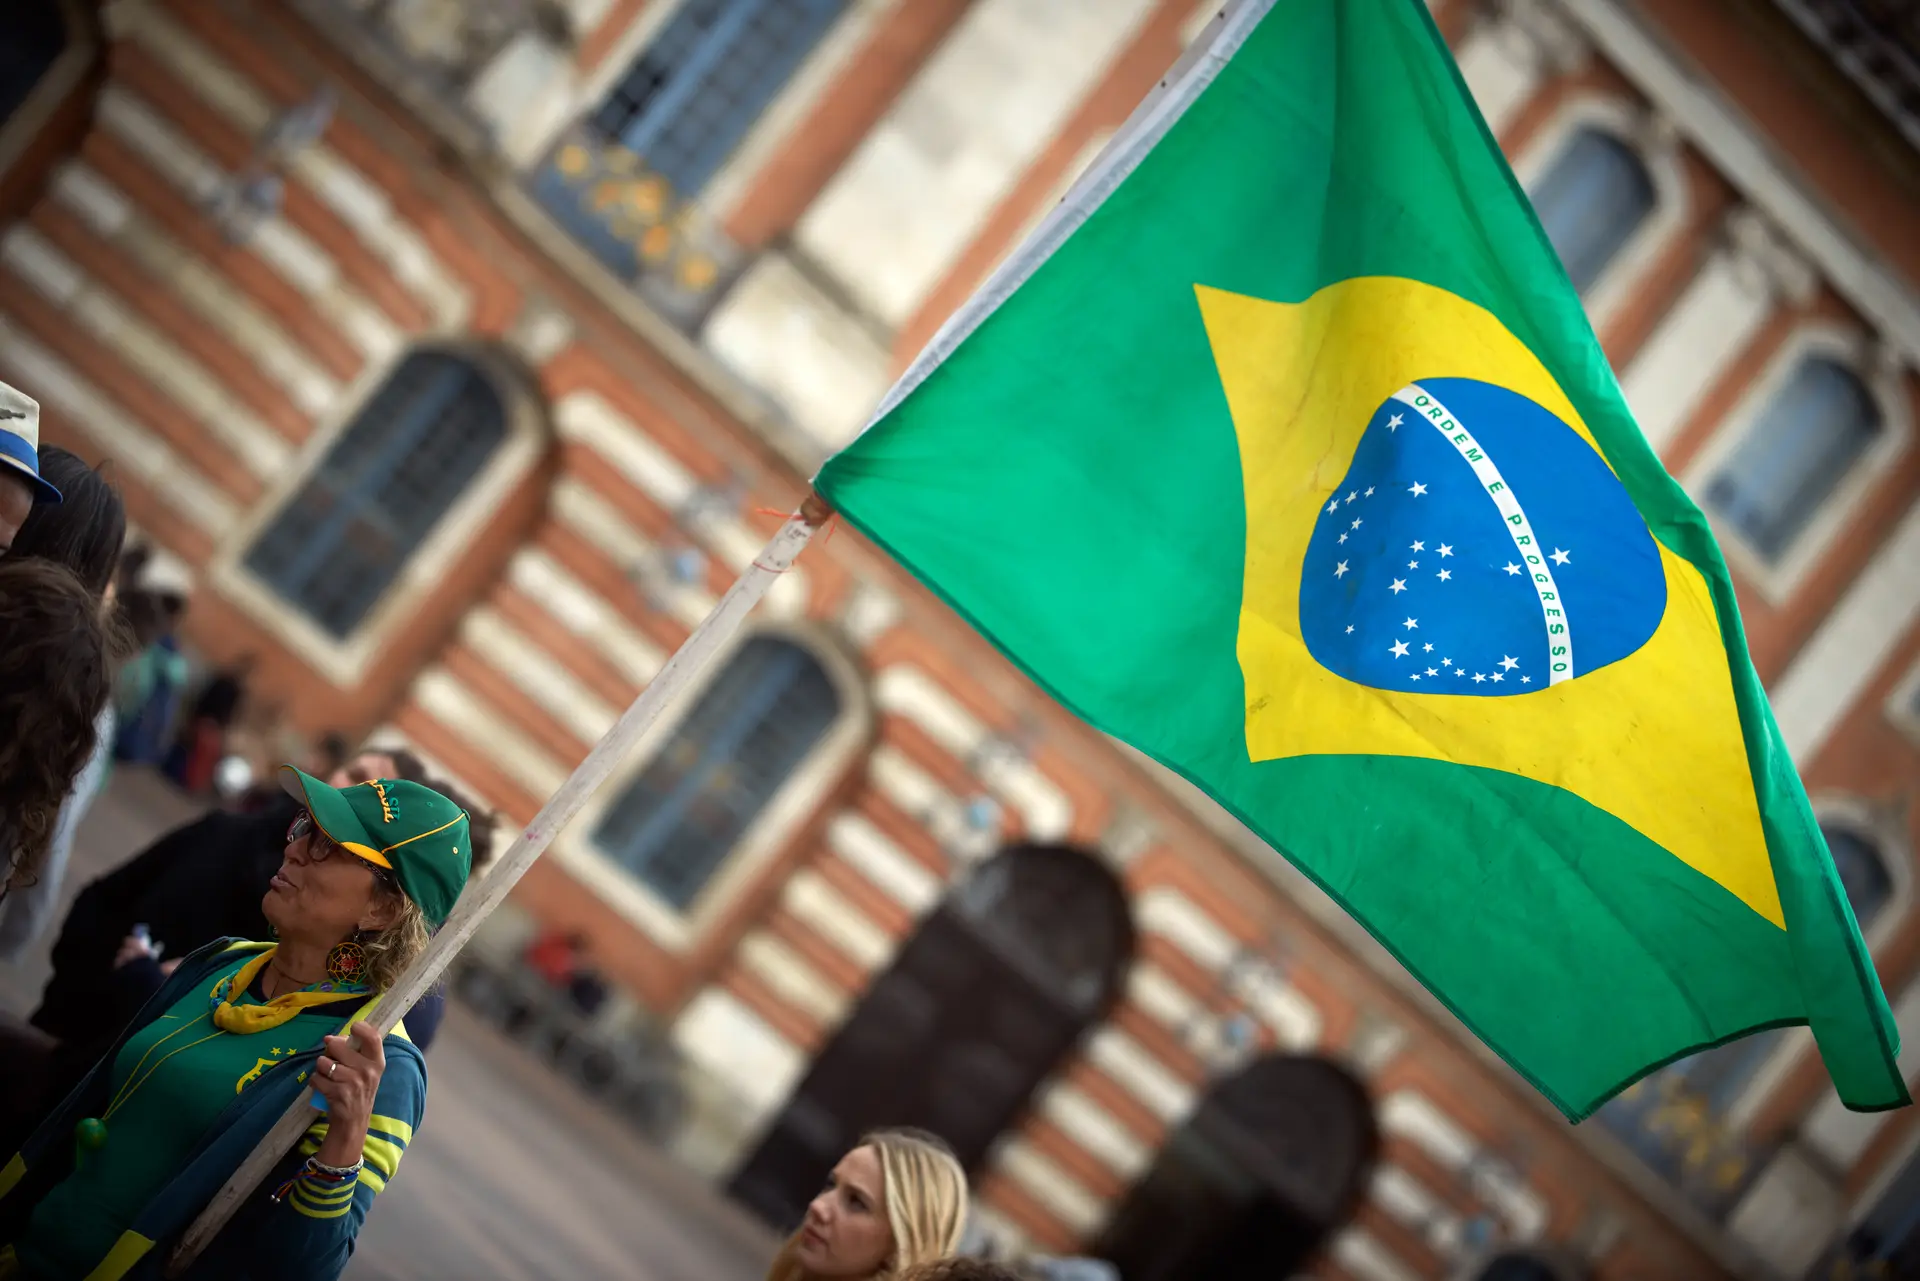 Brasil à beira das eleições: o que dizem os especialistas sobre a economia brasileira em seis pontos